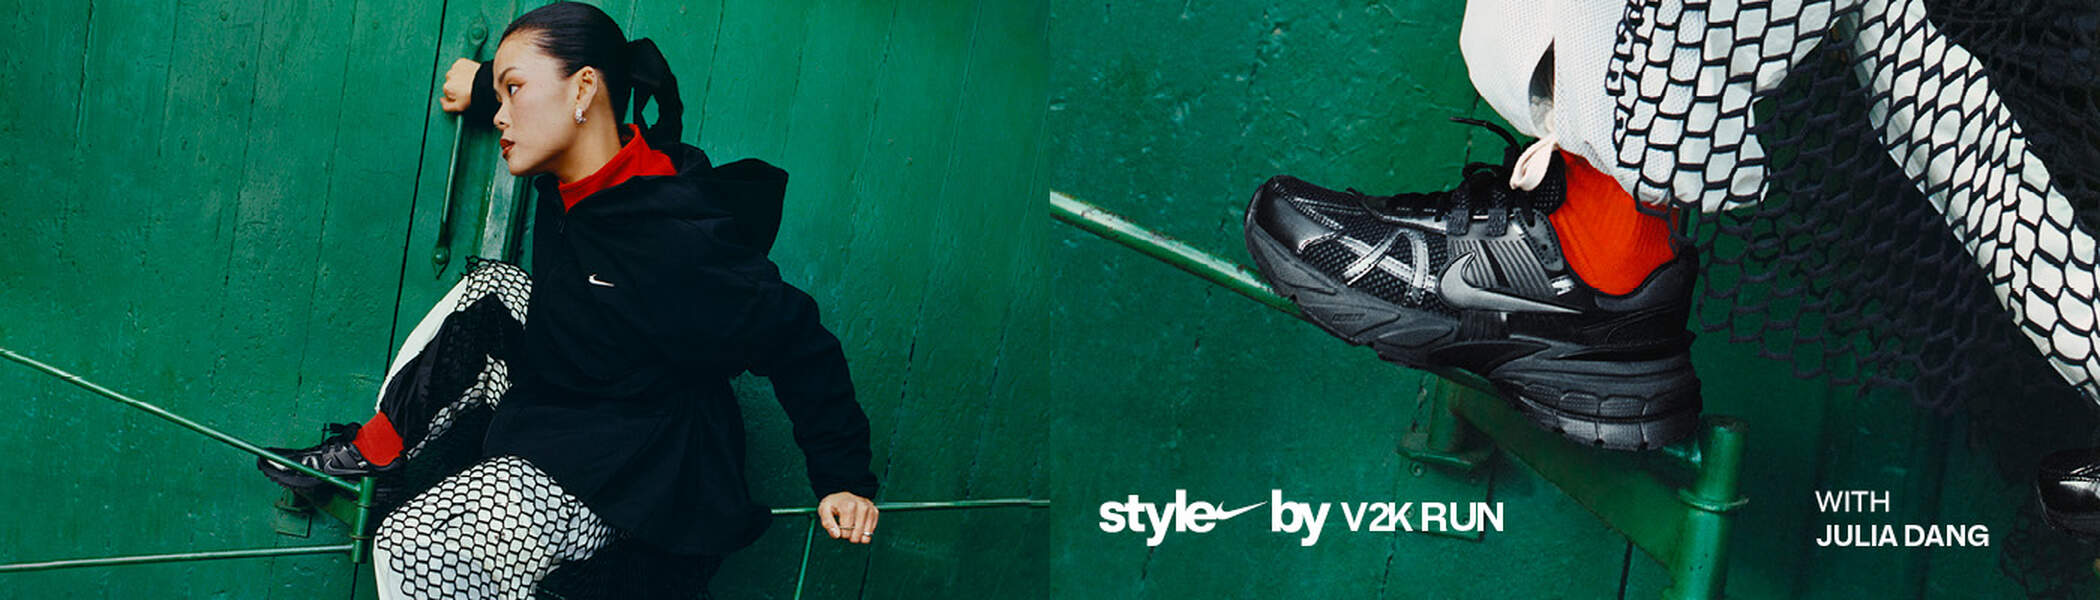 Chaussettes de sport pour hommes Fila anti-choc - 6 paires - noir avec  couleur 